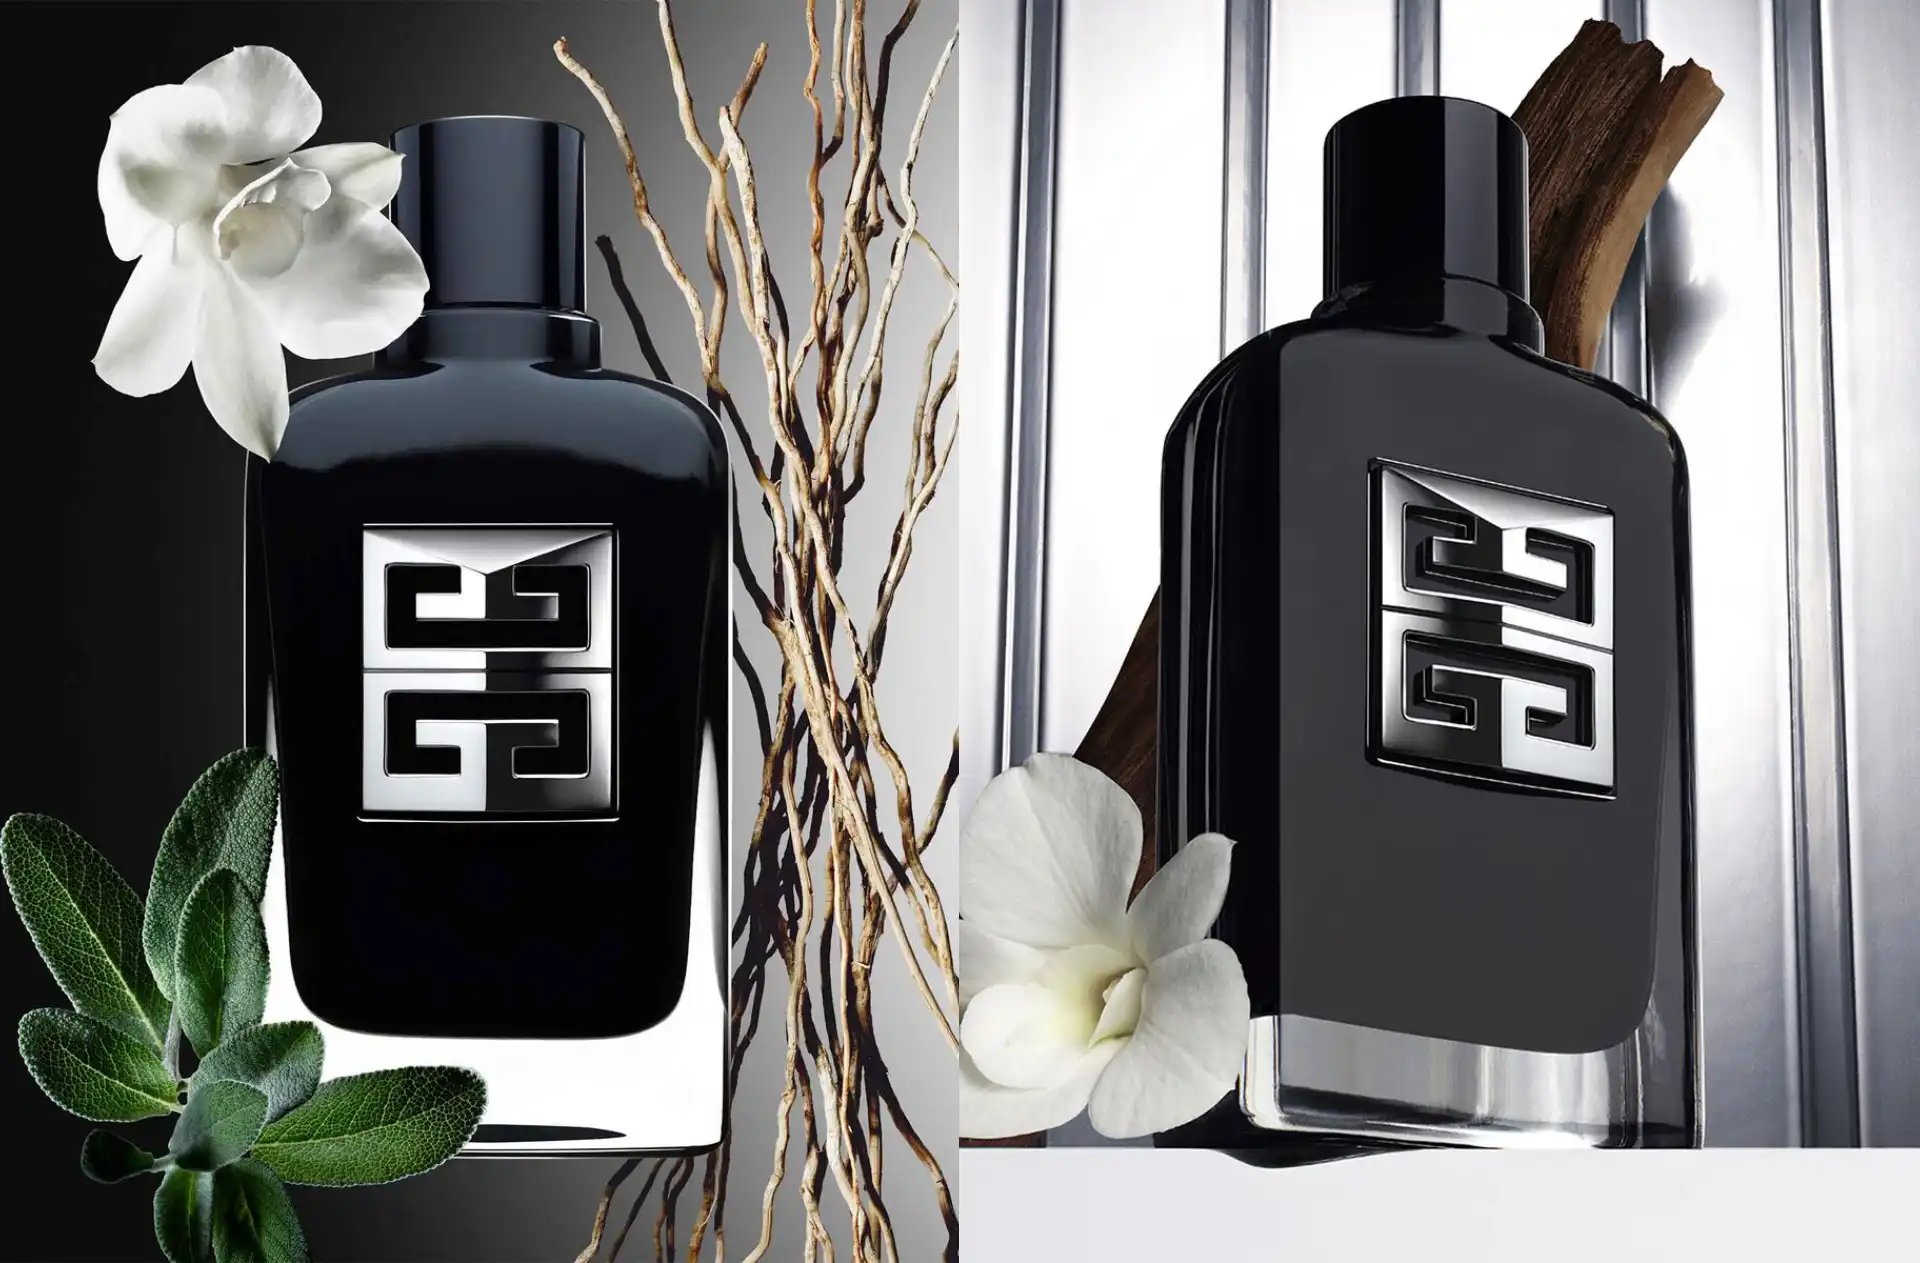 Así es la versión 2023 de Gentleman, el perfume para hombres de Givenchy